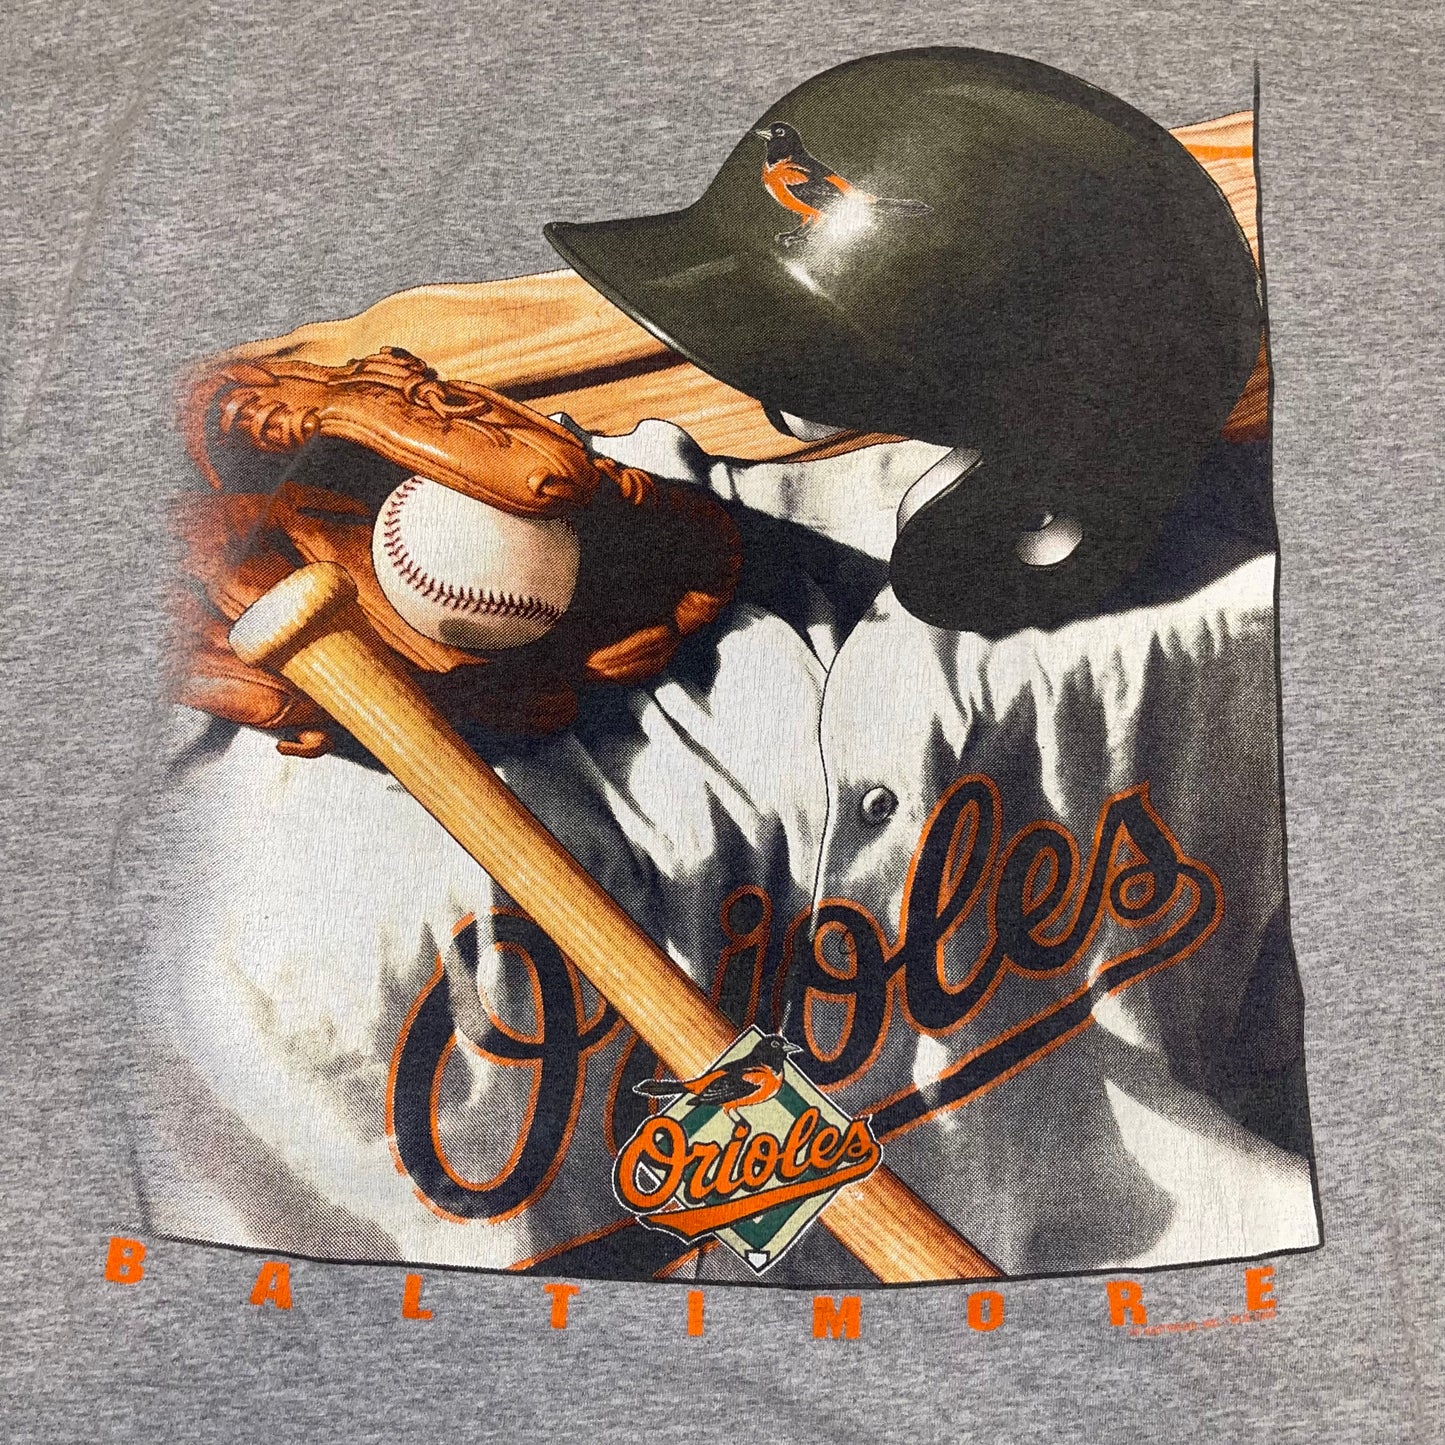 Vintage 90’s Baltimore Orioles T-shirt. XL